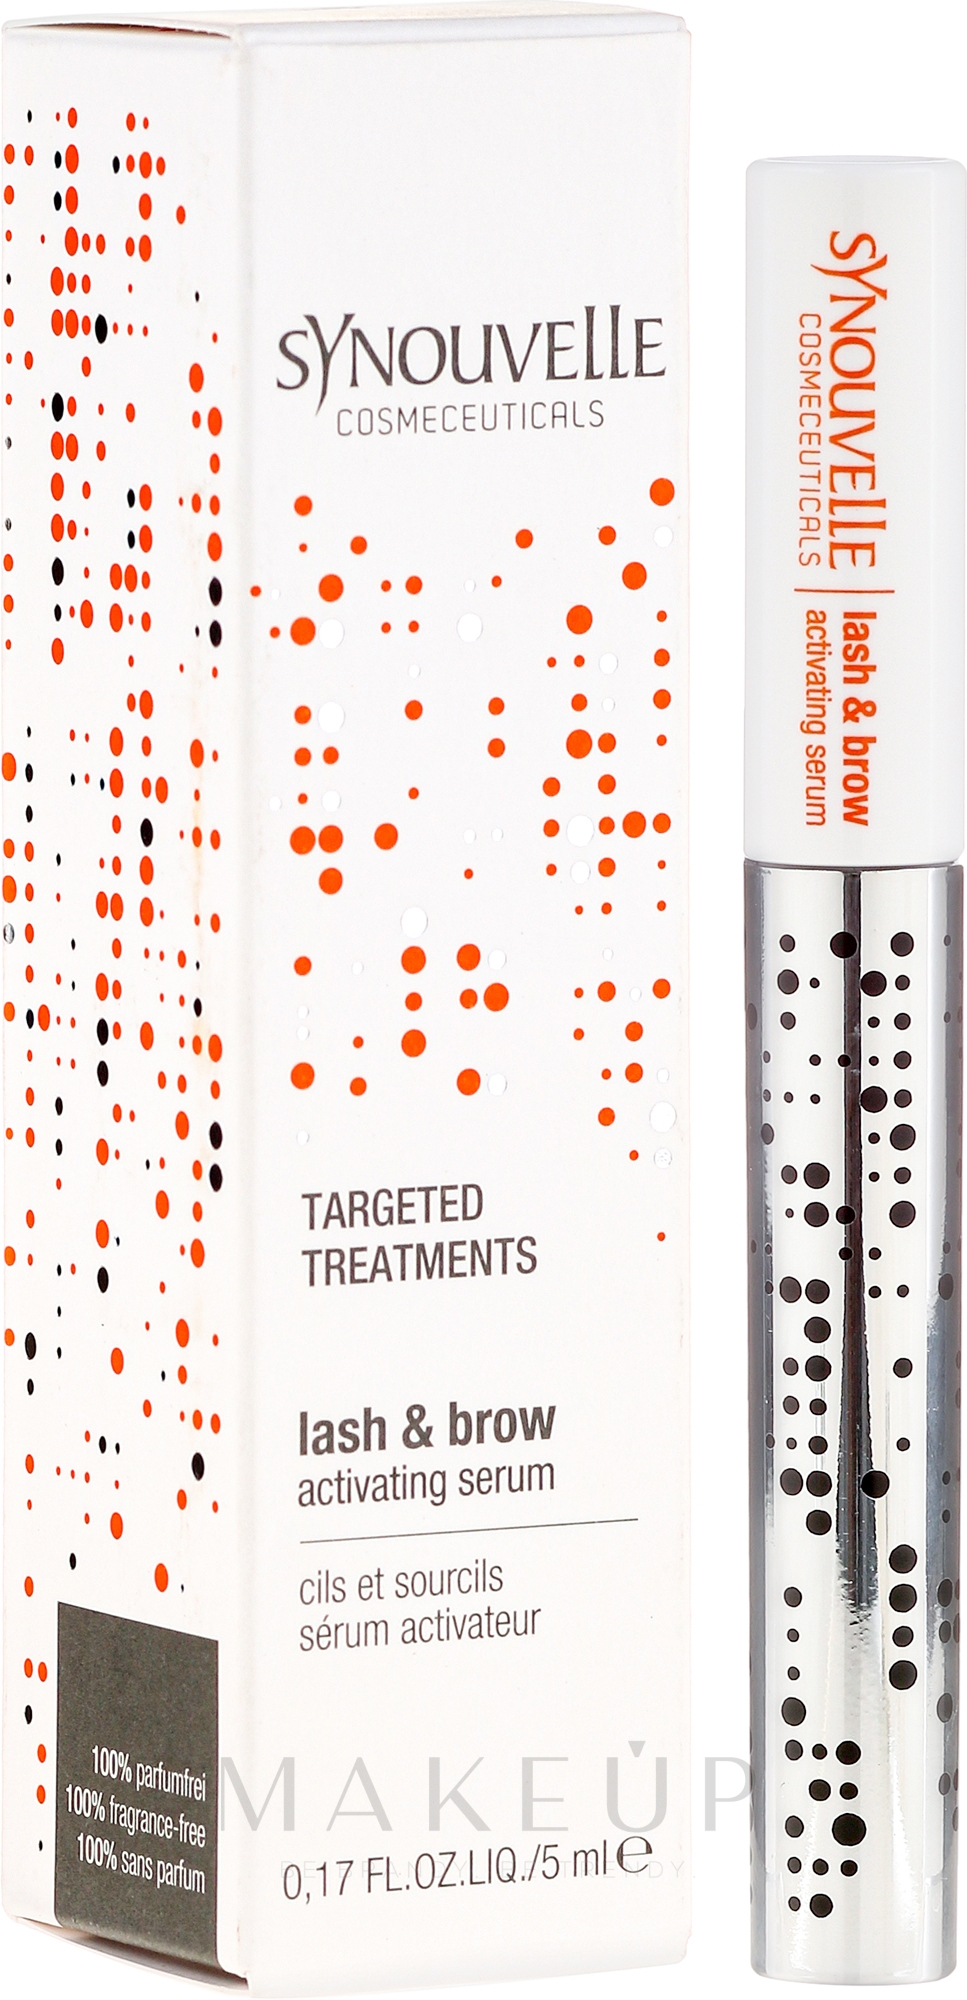 Hochkonzentriertes Wirkstoff-Serum für Wimpern und Augenbrauen - Synouvelle Cosmectics Targeted Treatments Lash & Brow Activating Serum — Bild 5 ml